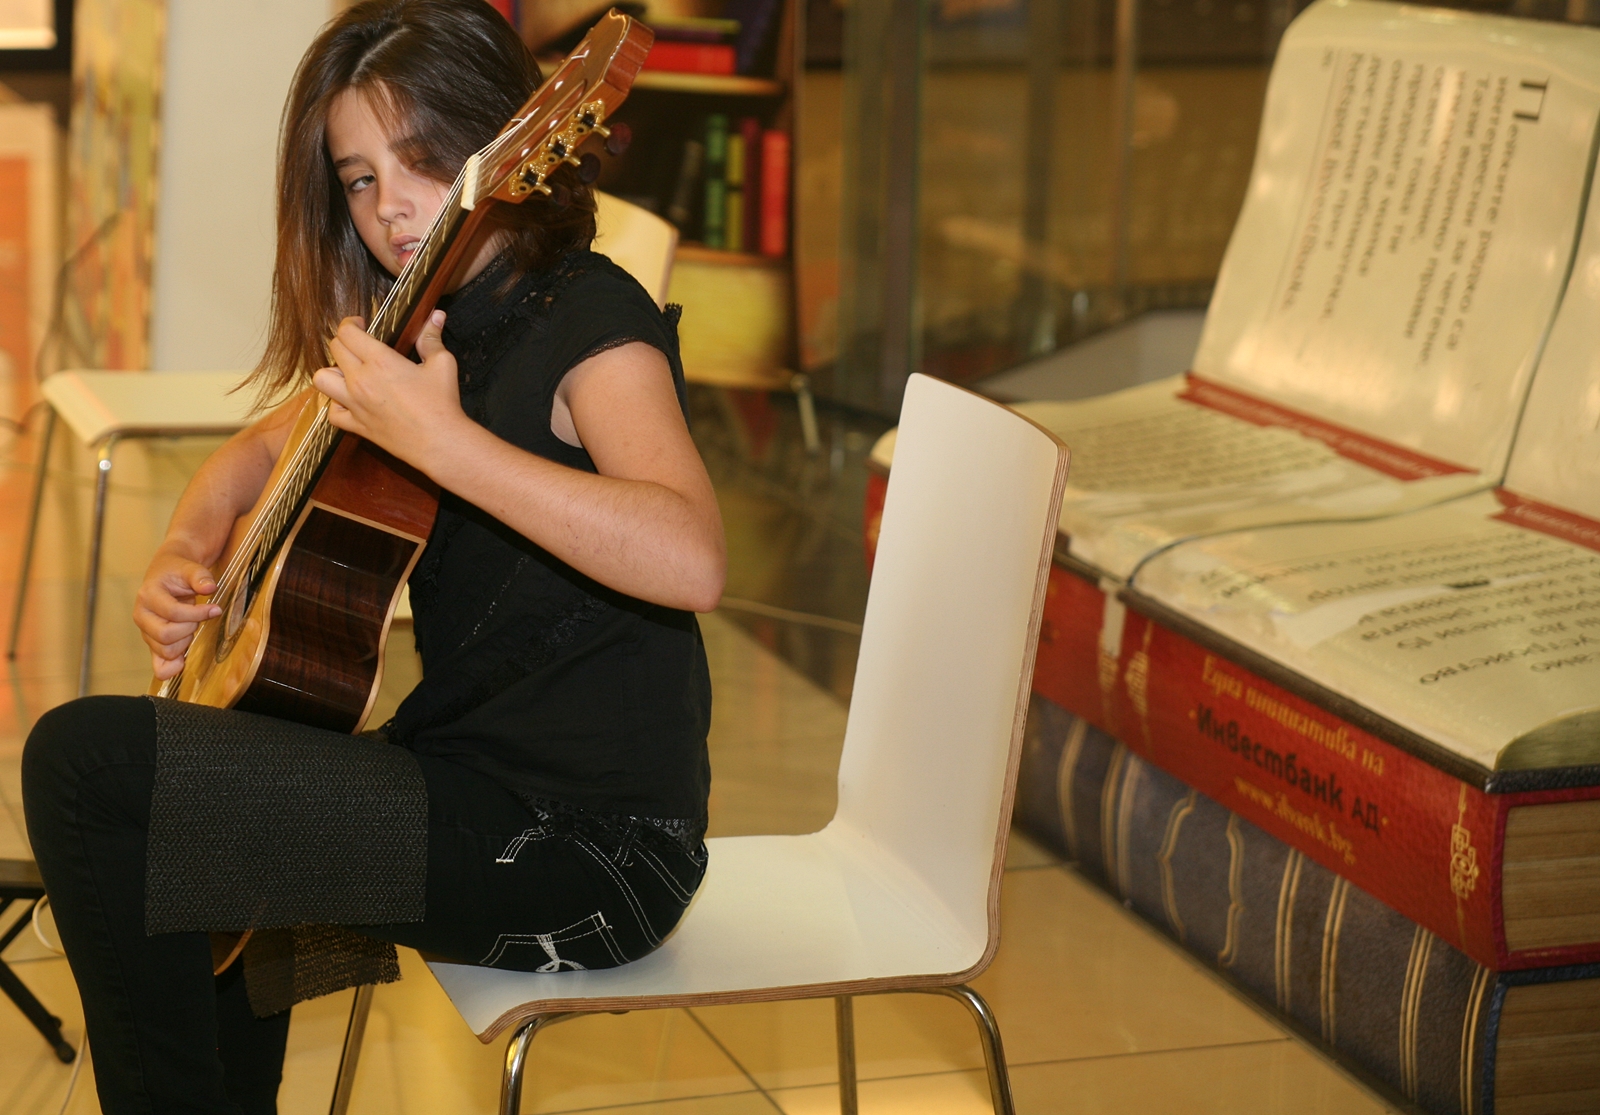 Деца и китари в  Панорама мол Плевен – фото-галерия